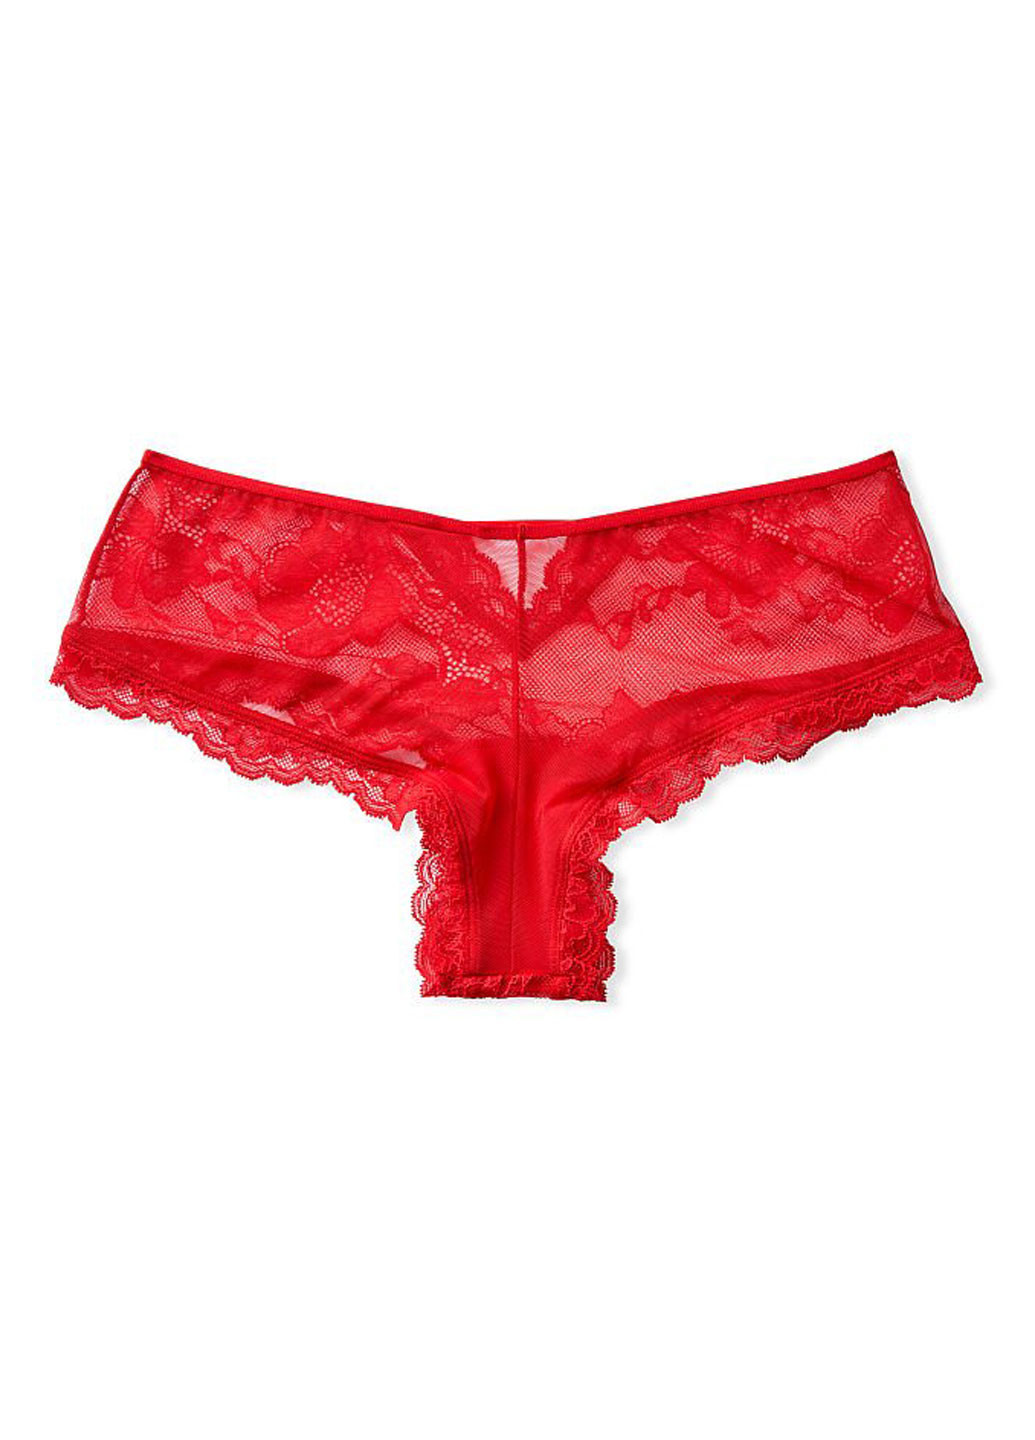 Трусы Victoria's Secret бикини однотонные красные повседневные полиамид, кружево